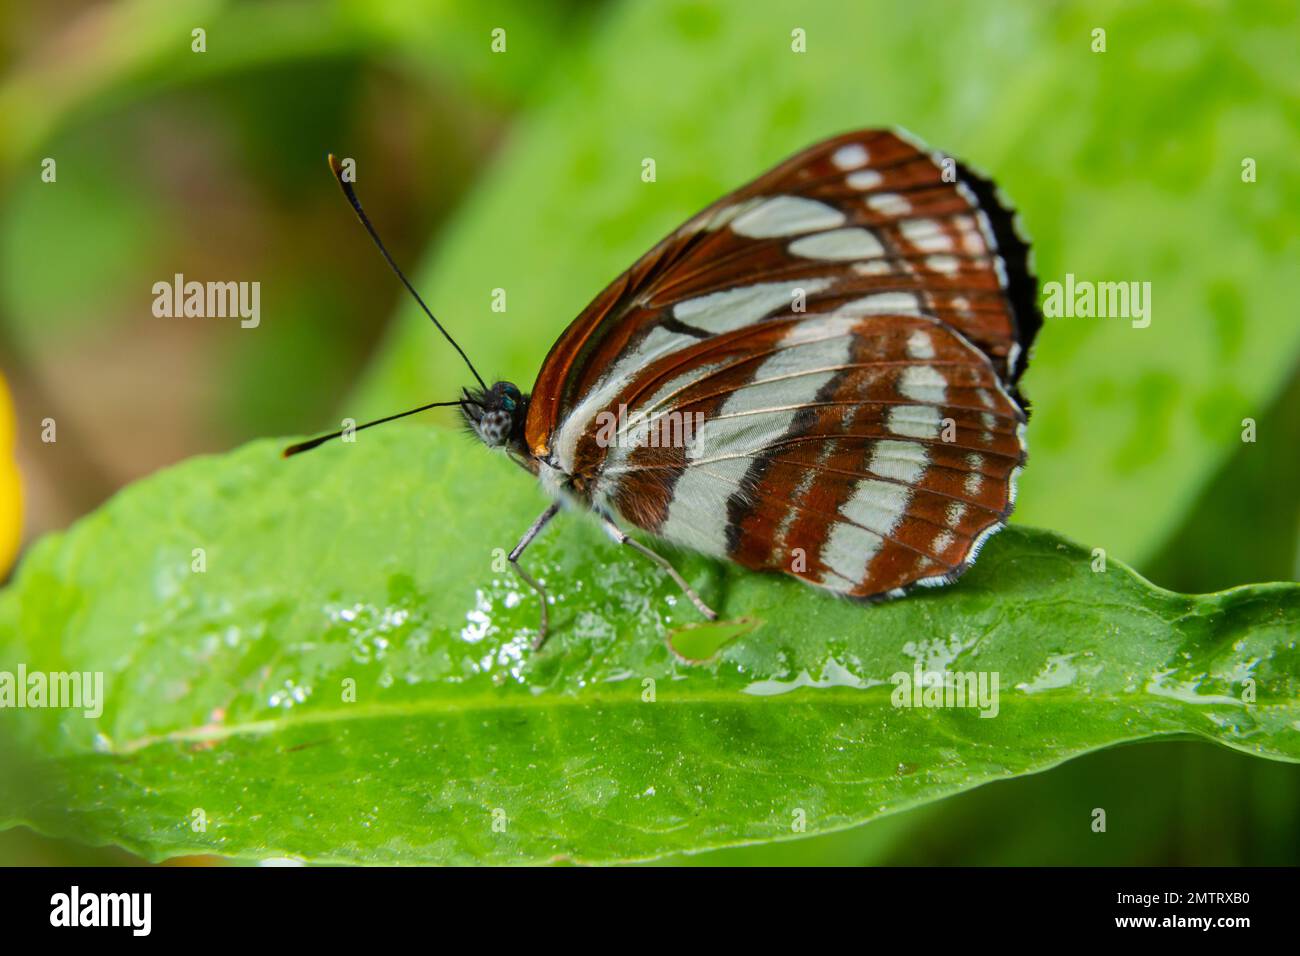 Ein Tag Schmetterling von der Familie Nymphalidae, Neptis sappho. Der Schmetterling ist sehr vertrauensvoll, hat keine Angst vor einem Menschen, sitzt auf seinen Händen, auf seinem Gesicht. Stockfoto